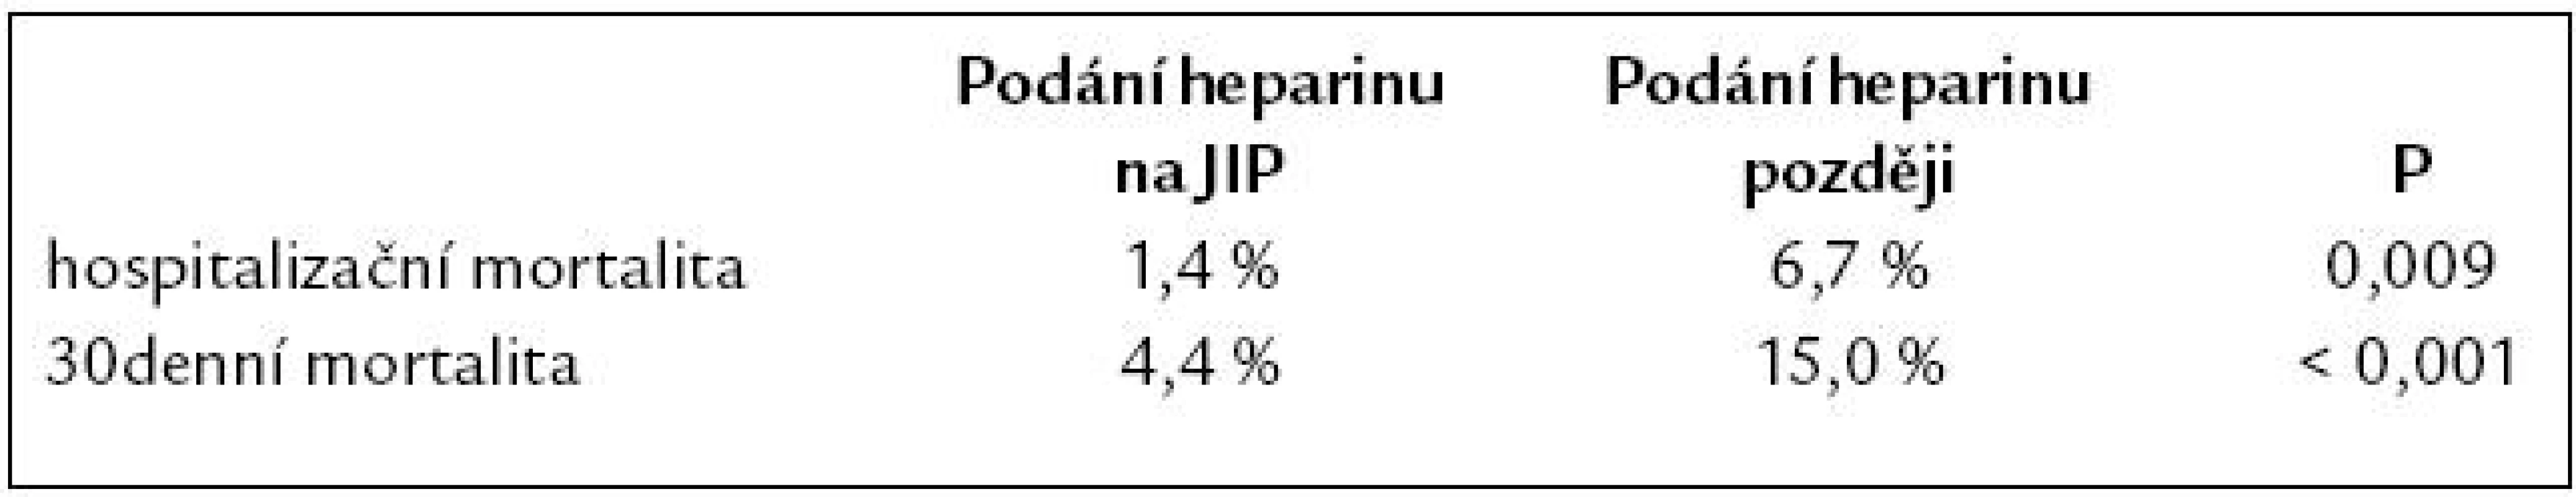 Časné podání heparinu je provázeno snížením mortality.